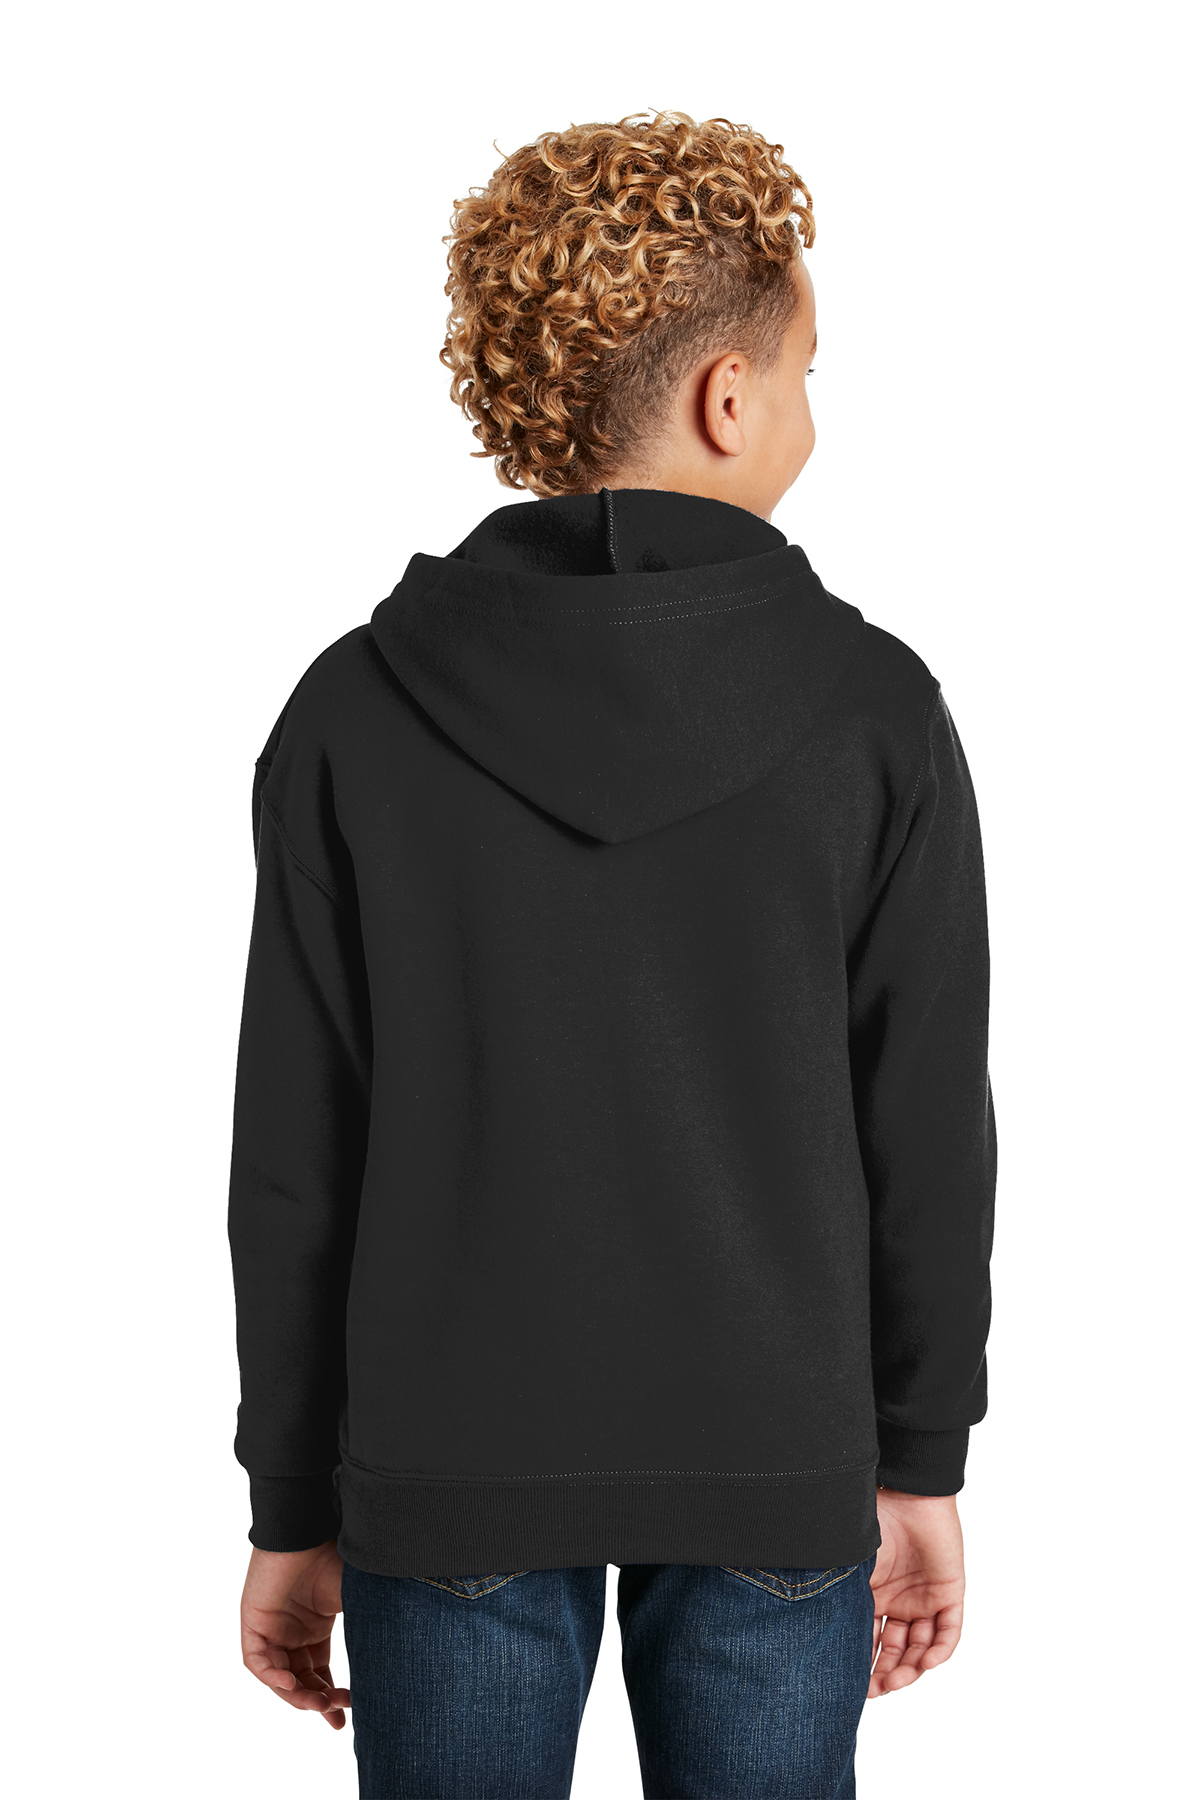 Jerzees - Youth NuBlend Full-Zip Hooded Sweatshirt | Product | SanMar